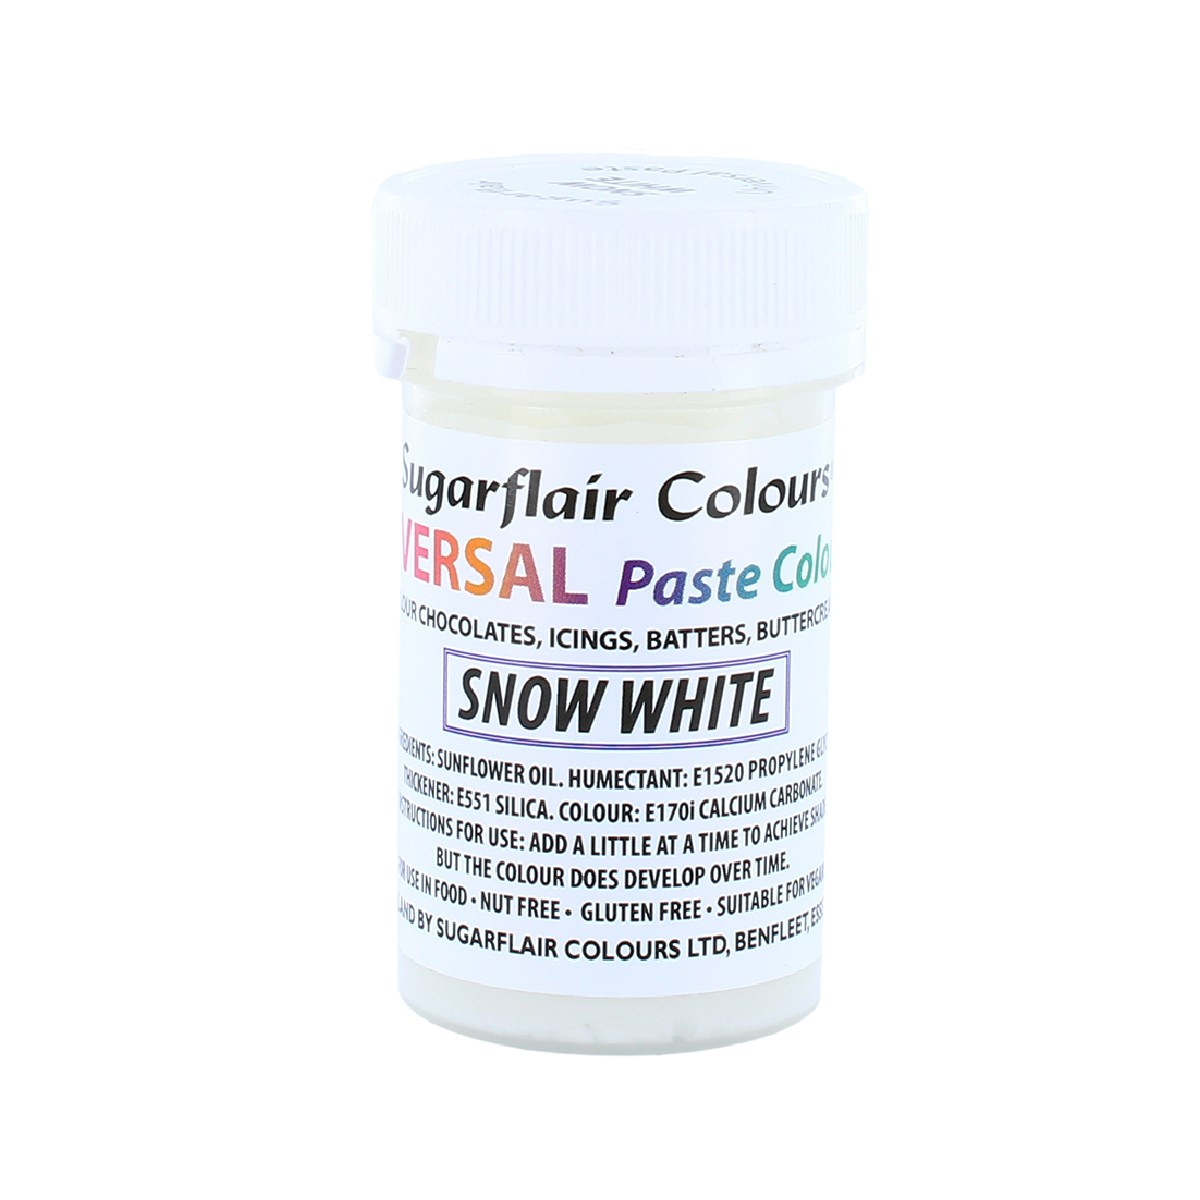 Sugarflair Universal Paste Colour Snow White E171 FREE 22g